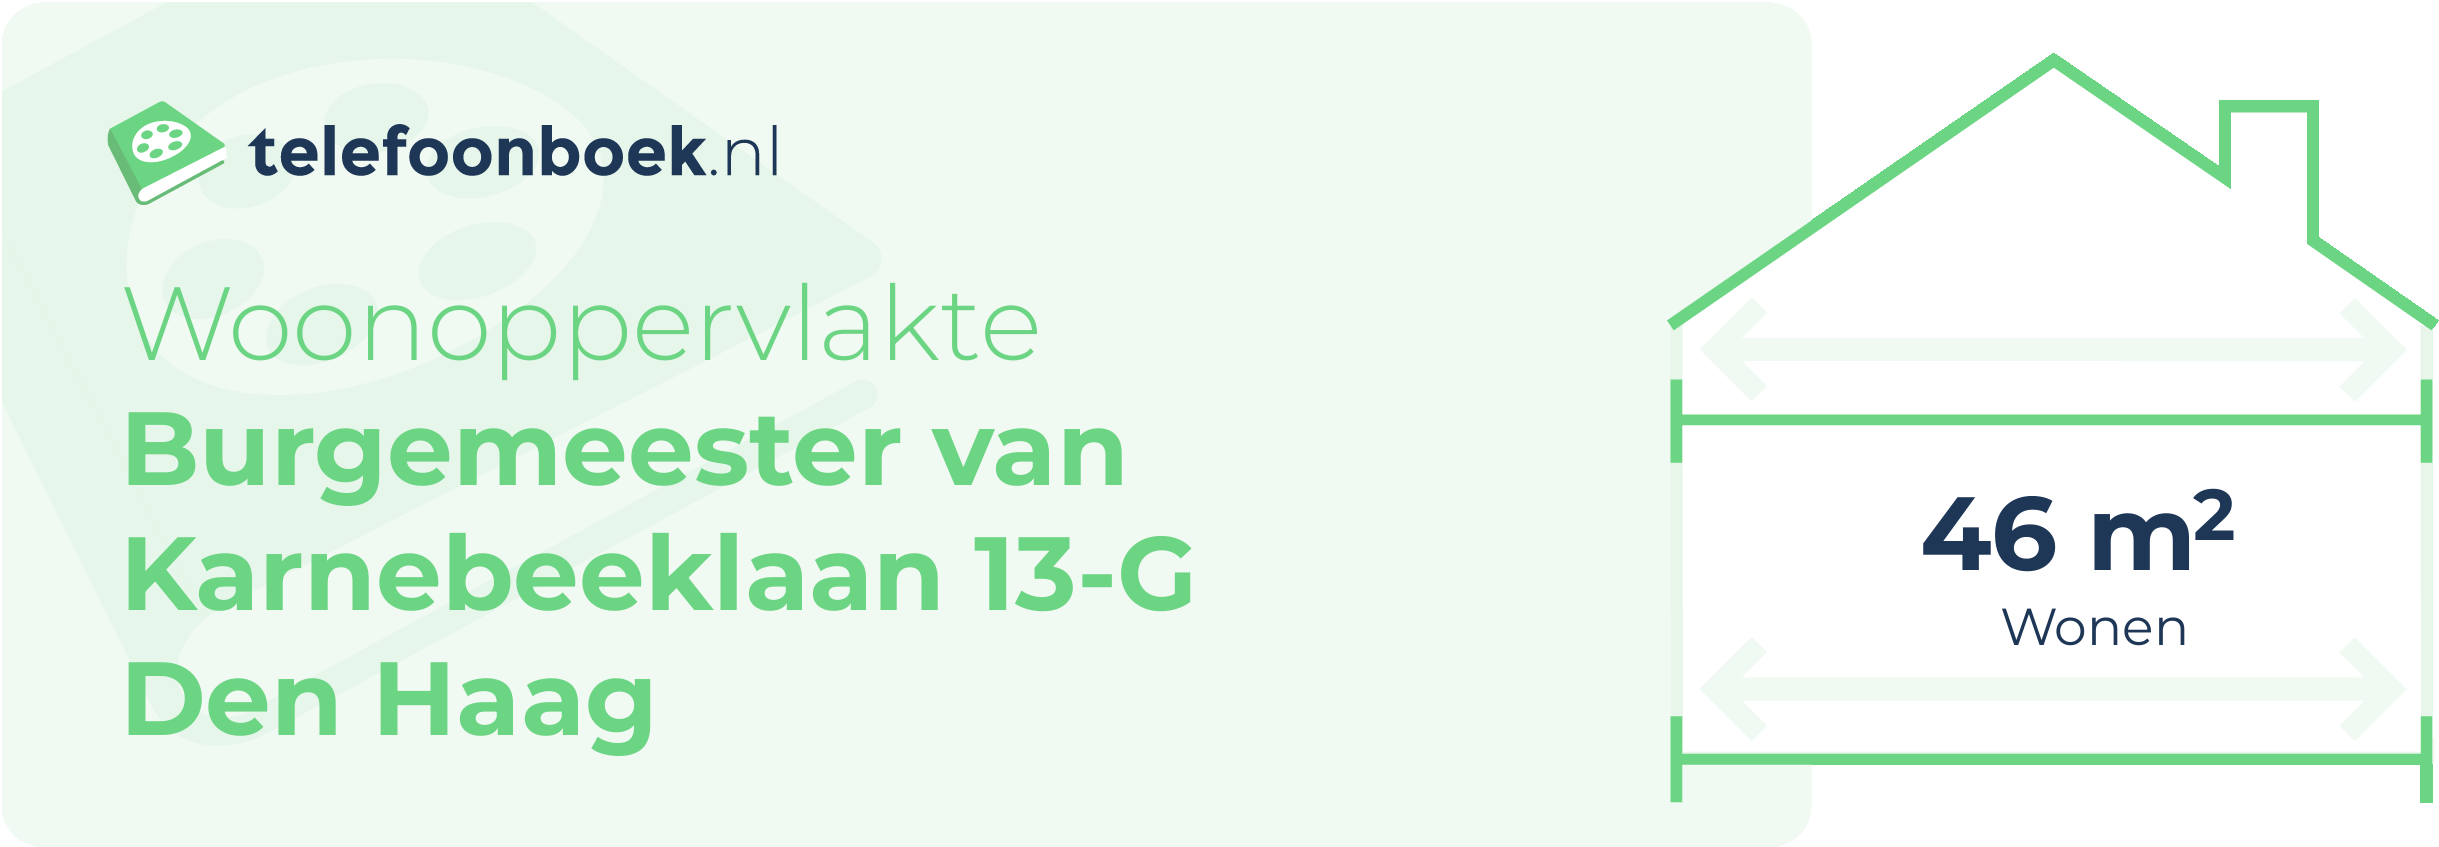 Woonoppervlakte Burgemeester Van Karnebeeklaan 13-G Den Haag